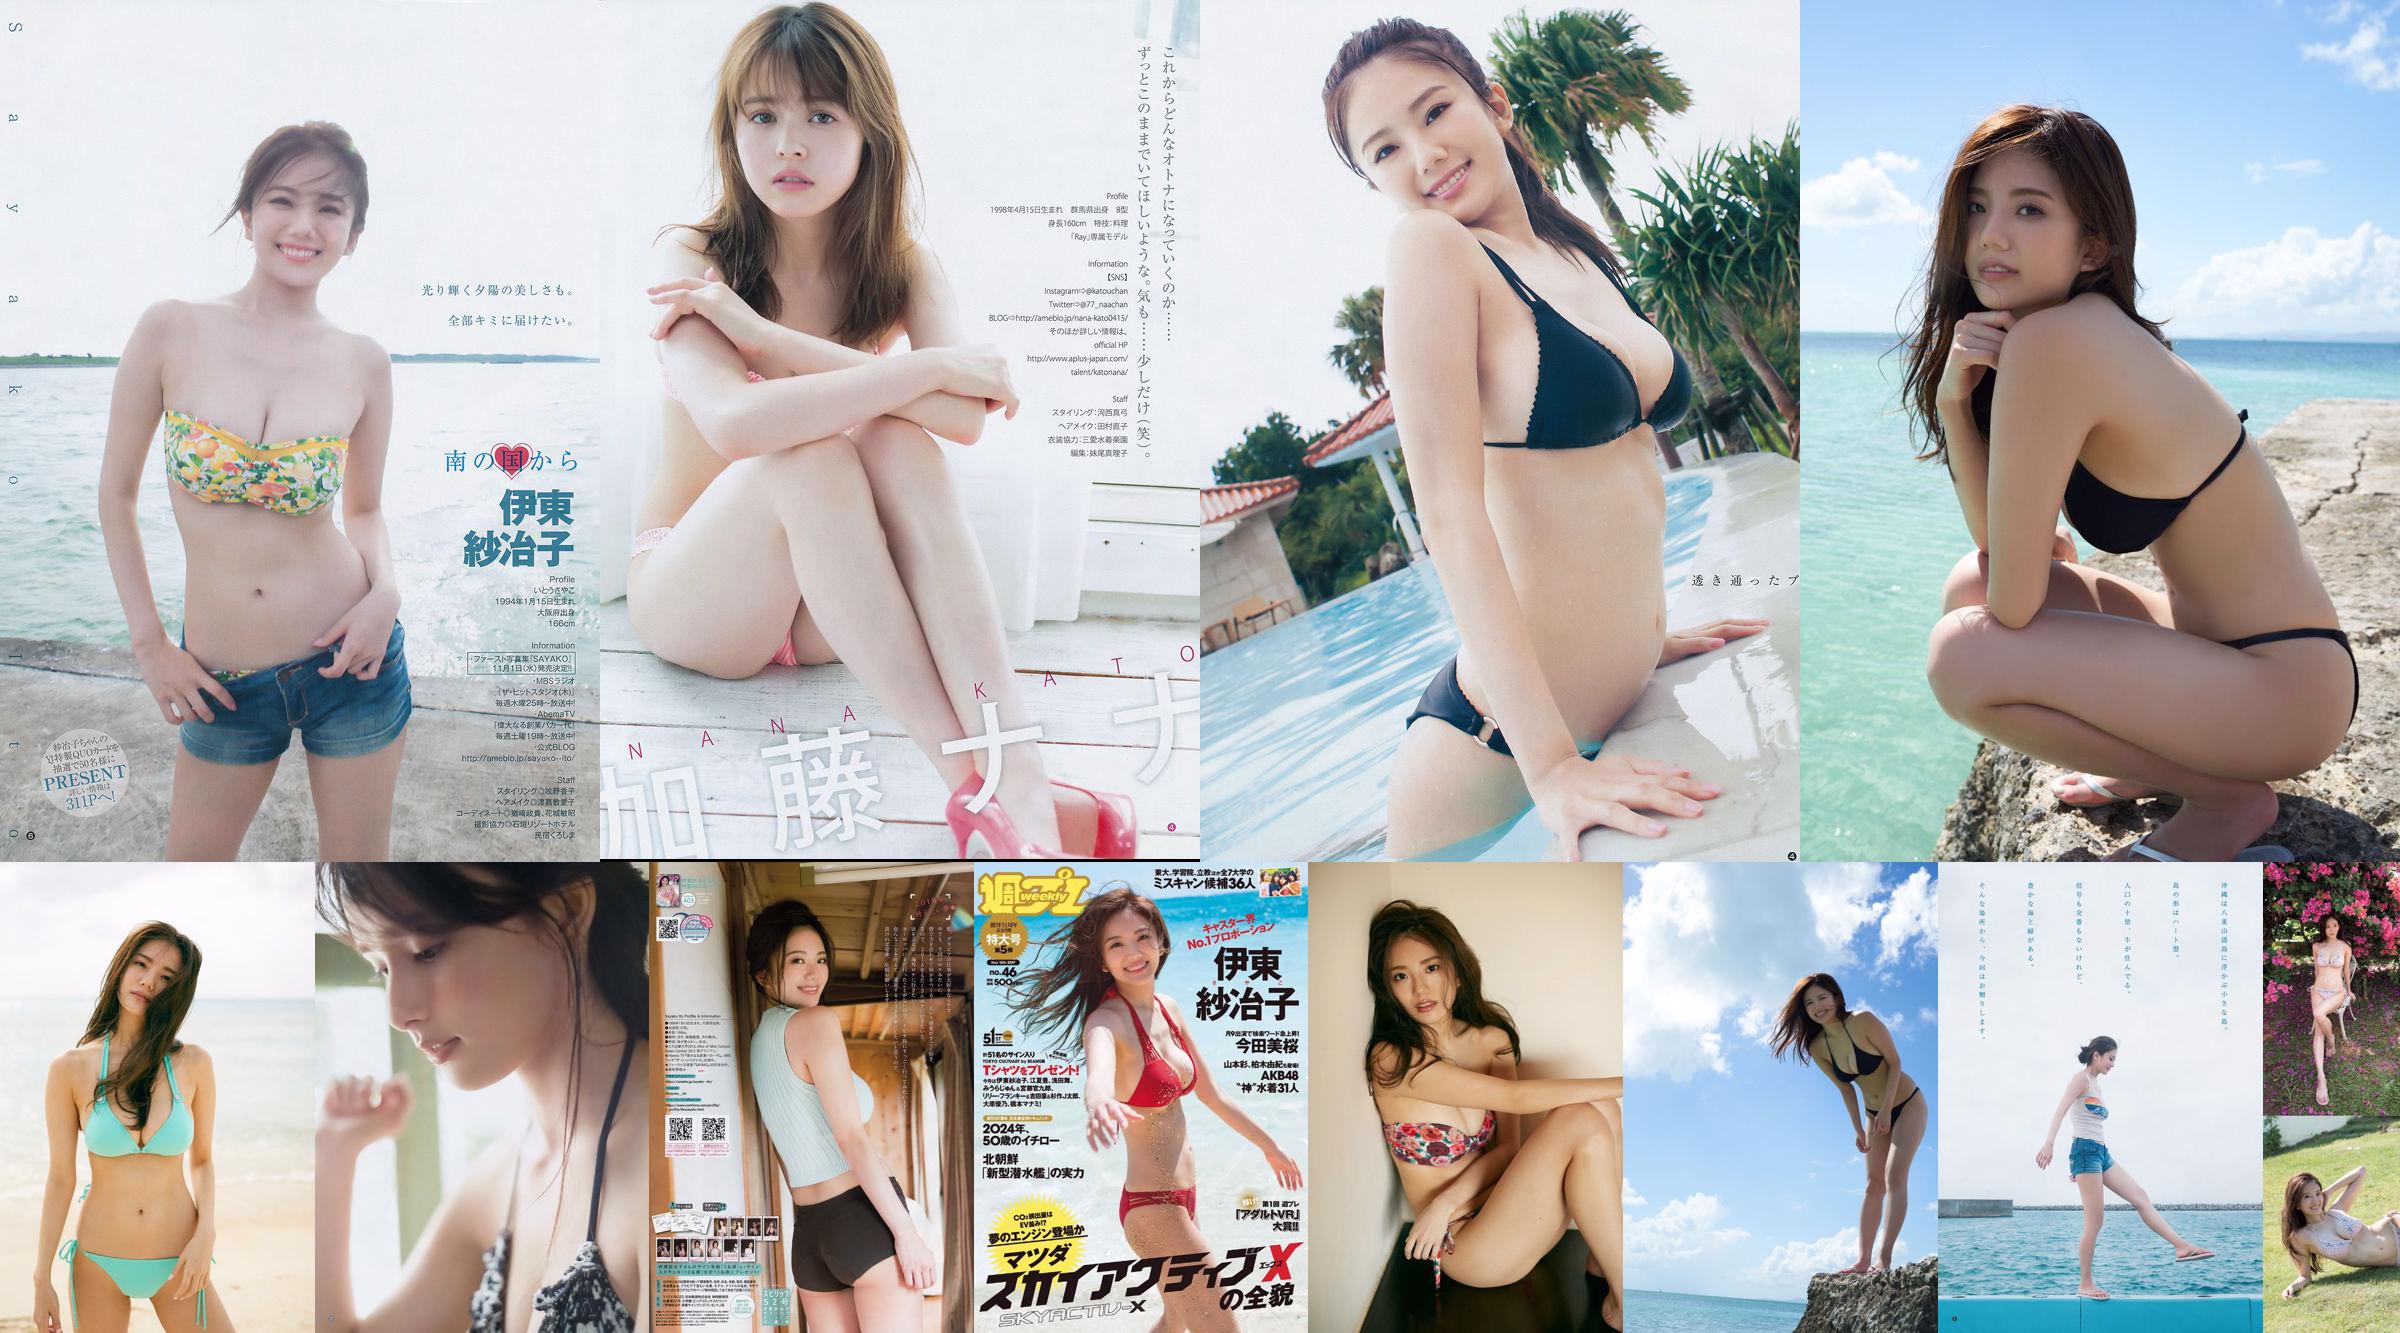 Ito Sayeko, Mima Reiko, Sugimoto Yumi, Sato Reina, Yoshiki りさ Toyama Akiko, Naninao [Weekly Playboy] 2016 No.36 Photo Magazine No.1fef45 Pagina 13